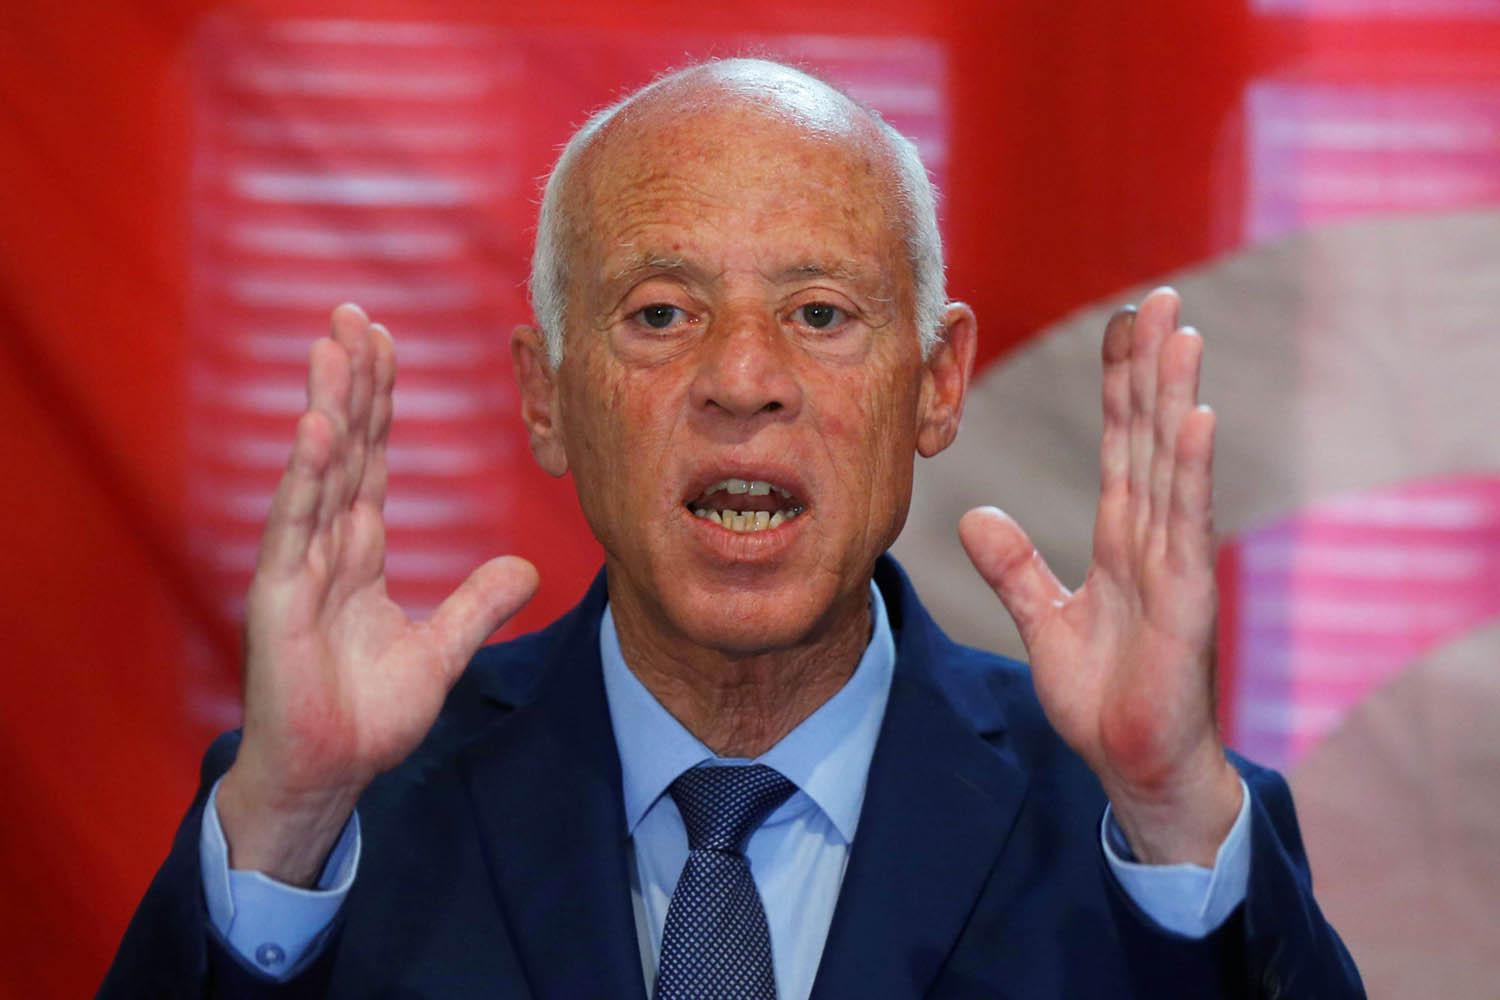 المرشح الرئاسي التونسي قيس سعيد